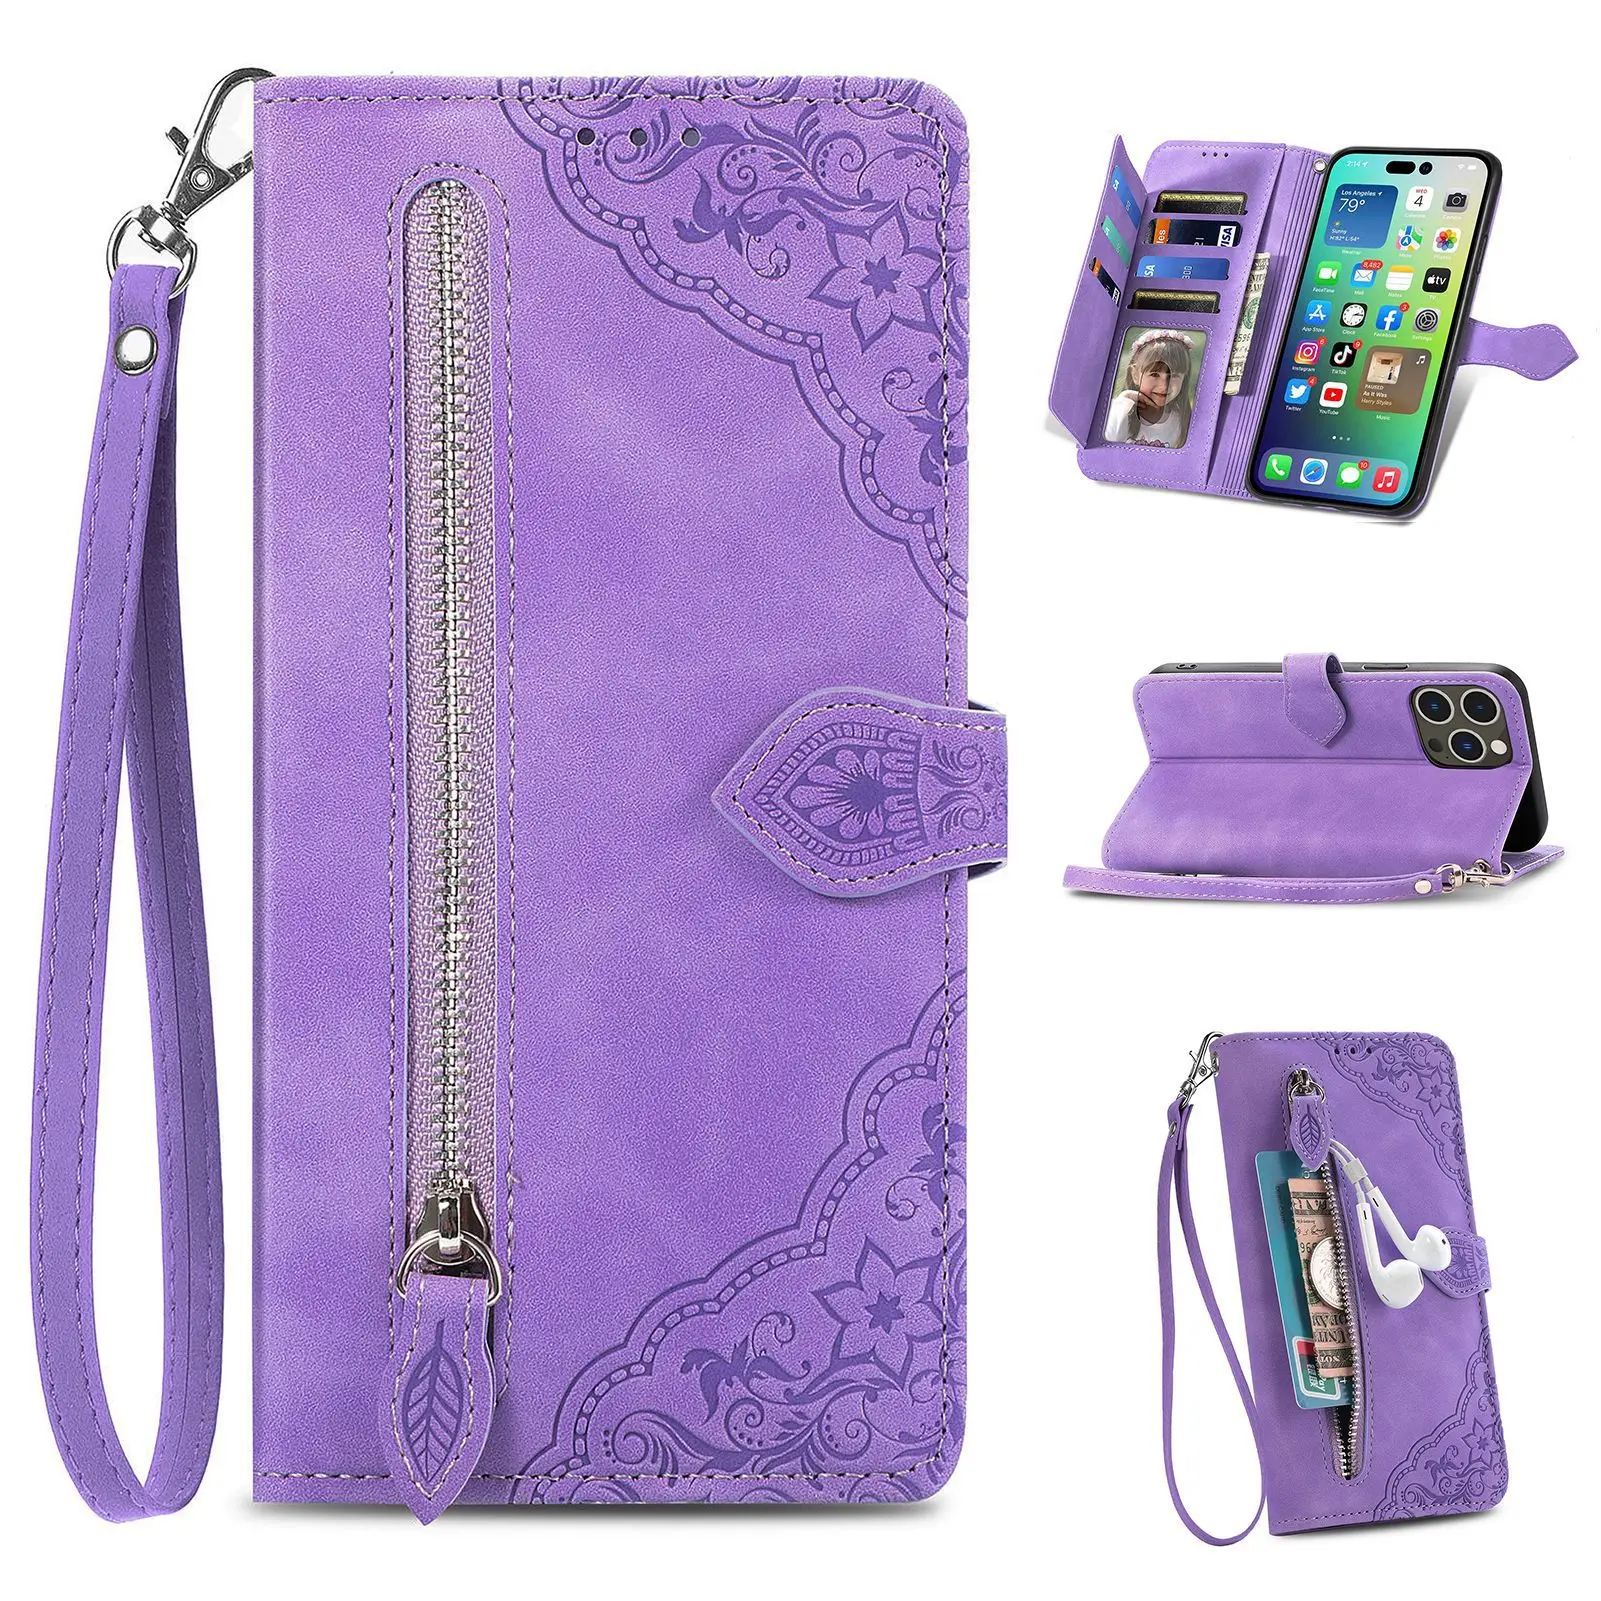 

Luxury Wirst Strap Wallet Phone Case For Nokia G400 G300 G60 G50 G42 G22 G21 G20 G11 Plus G10 Leather Zipper Flip Cover Funda